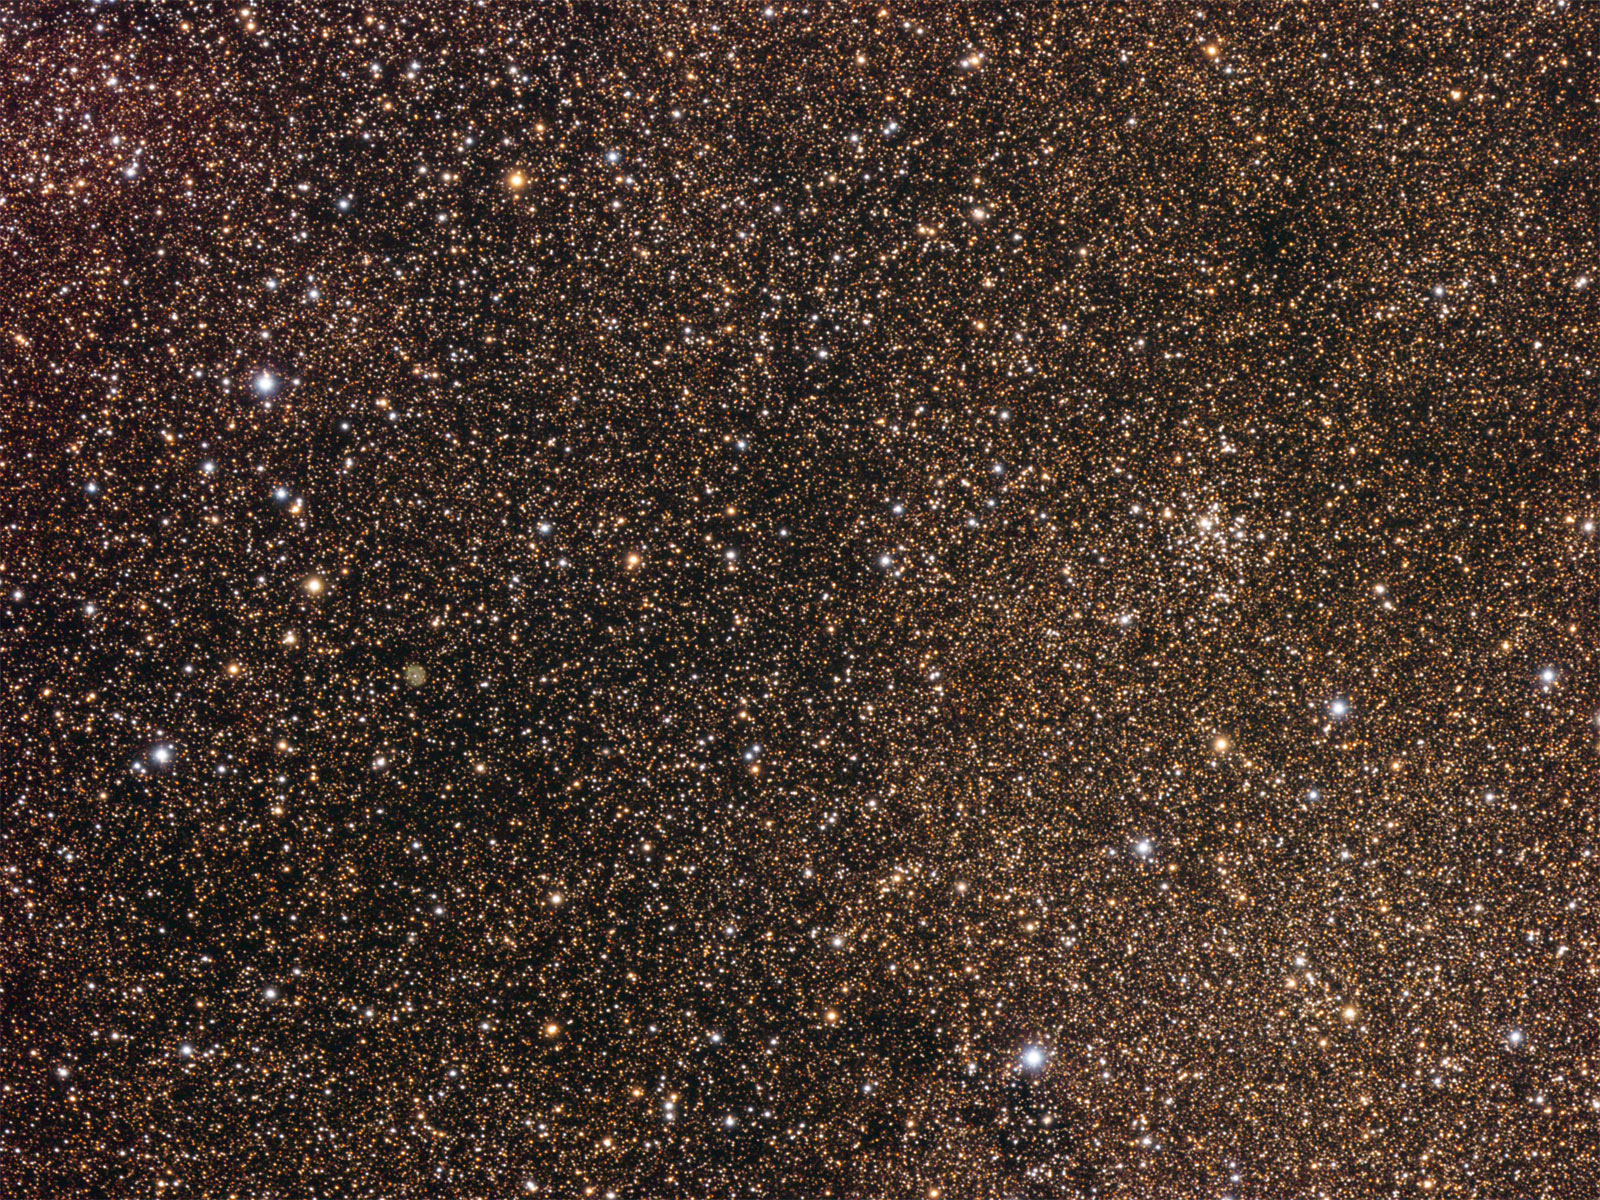 NGC 6834